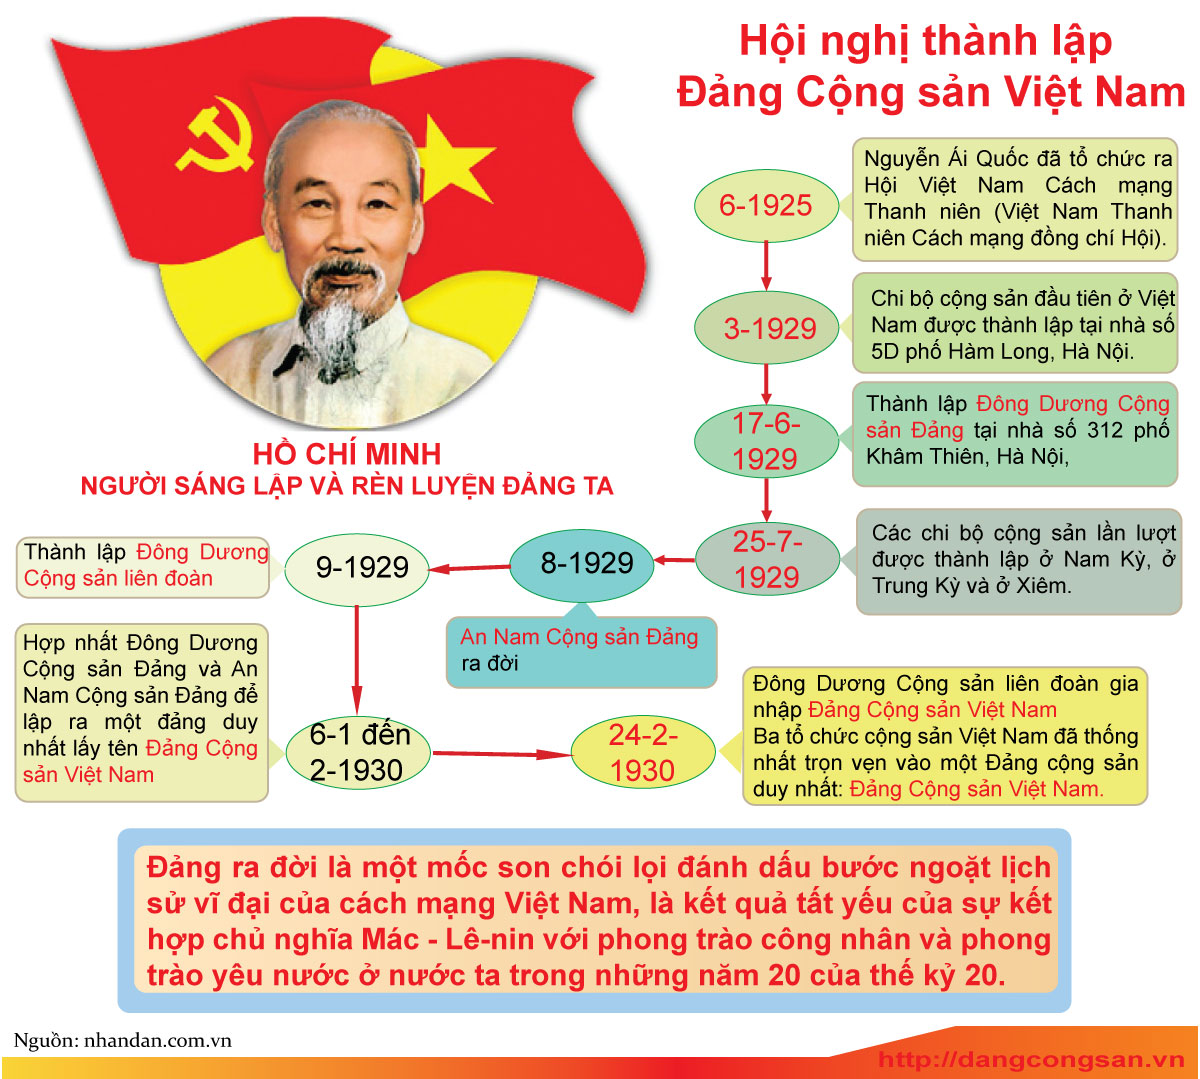 Tại sao Đảng Cộng sản Việt Nam là đảng duy nhất cầm quyền lãnh đạo cách